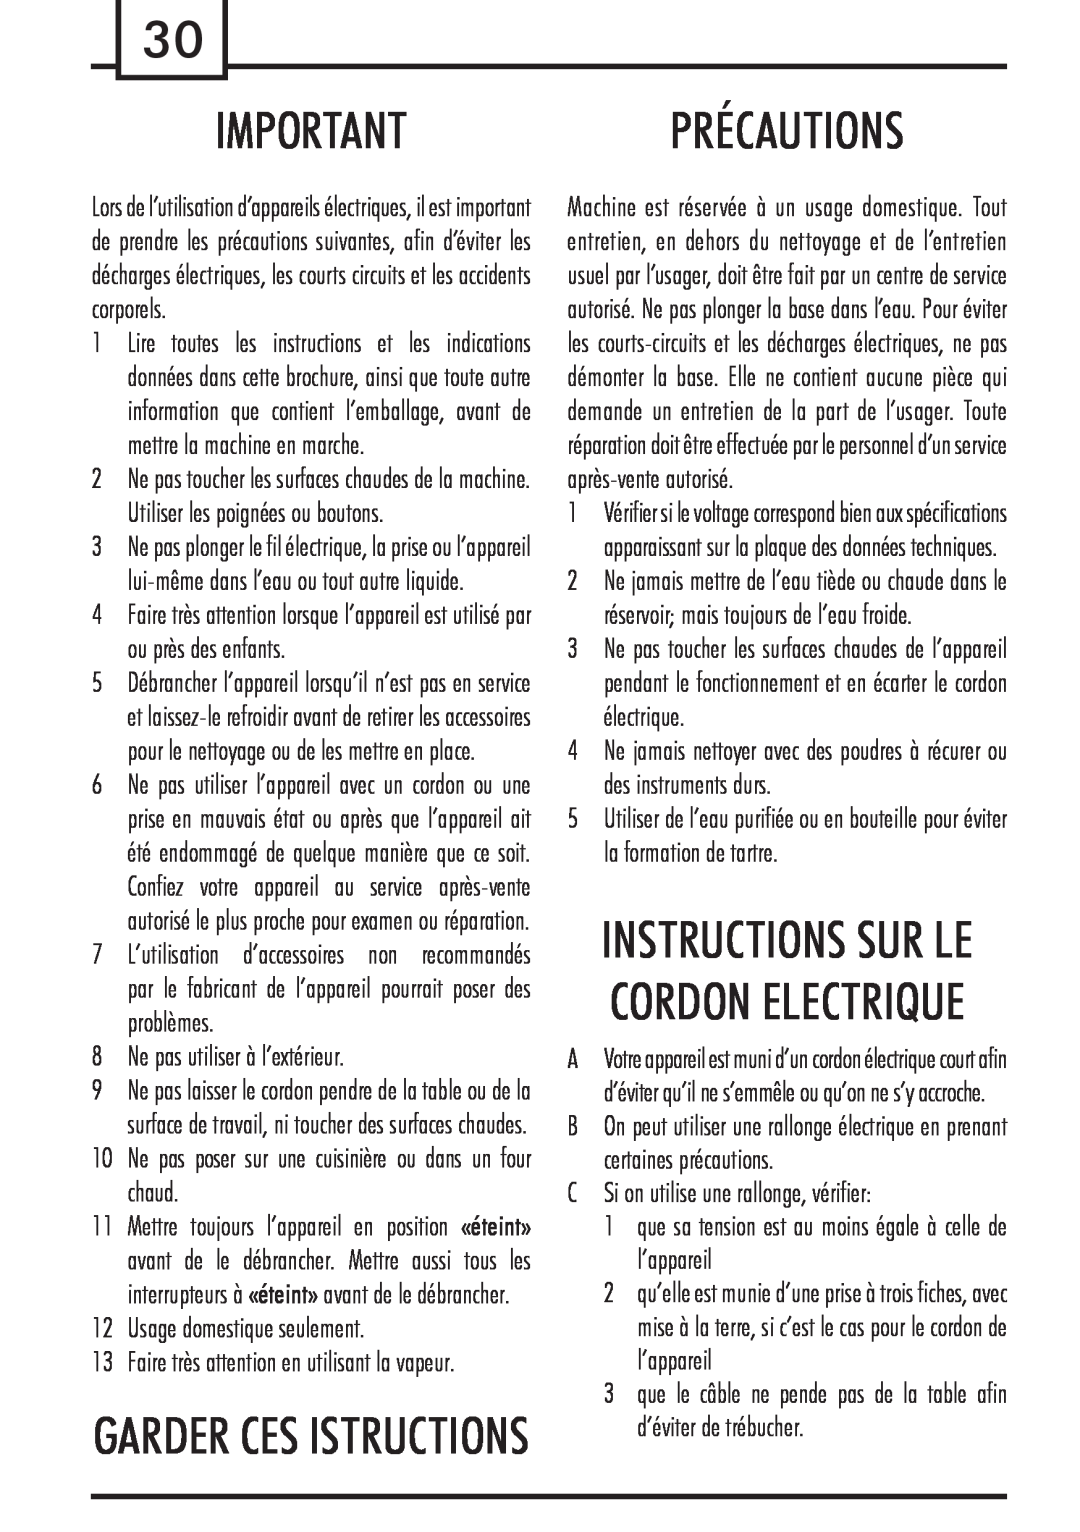 Gaggia Syncrony Importantprécautions, Garder Ces Istructions, Instructions Sur Le Cordon Electrique, problèmes, électrique 